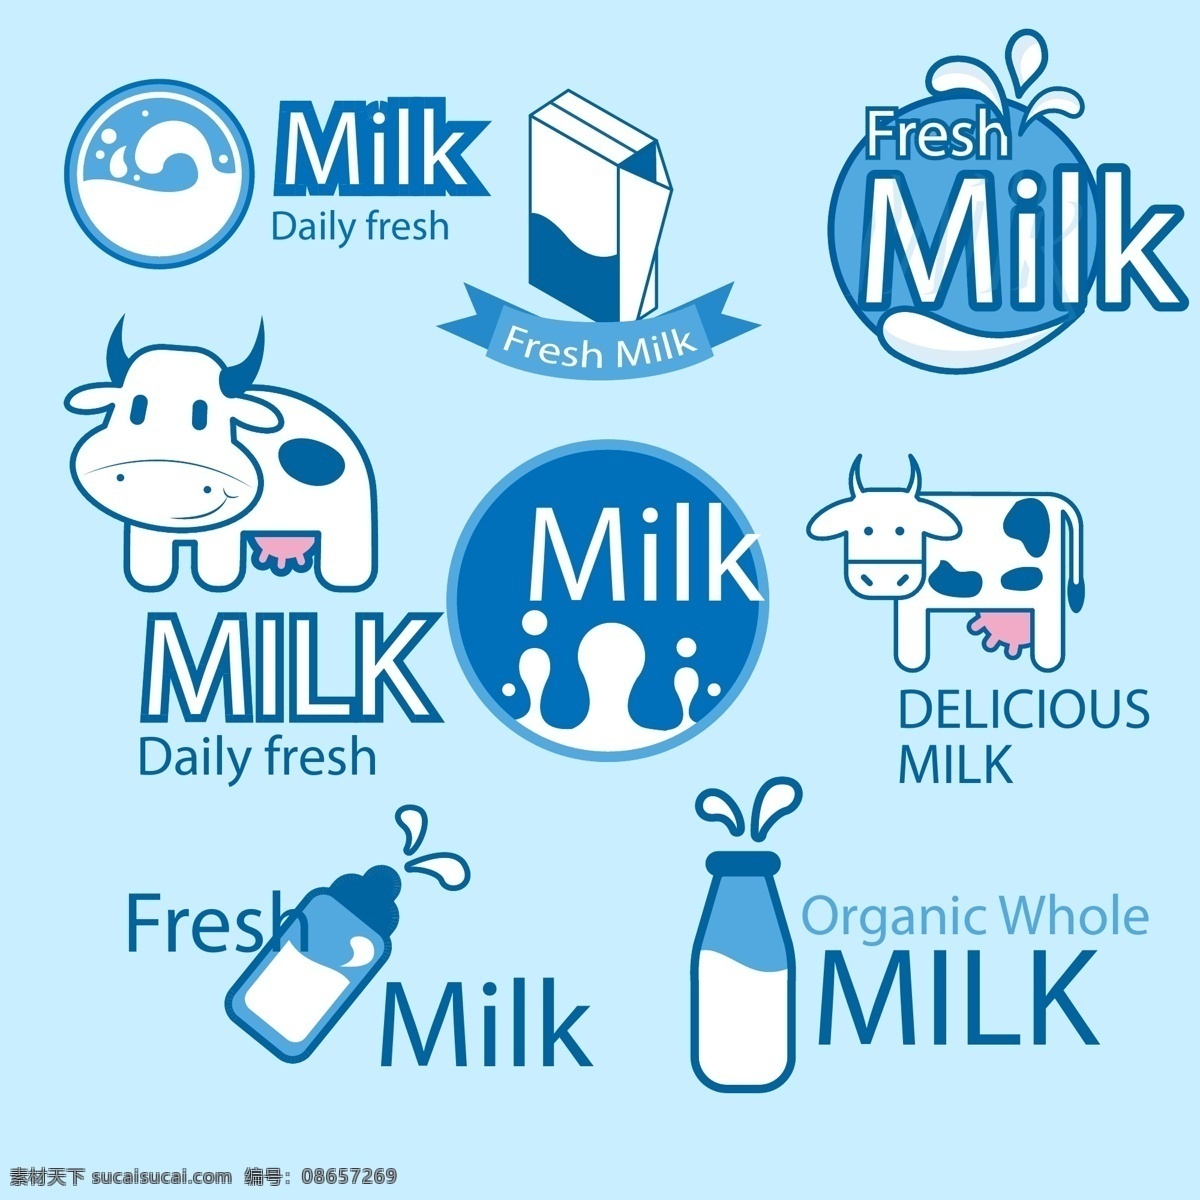 鲜奶包装标签 包装设计 标签 徽章 卡通奶牛 卡通牛 奶牛 奶瓶 牛奶 奶牛图标 鲜奶 牛奶商标 设计品牌 国外品牌 商标设计 牛奶标签 图标 酸奶 乳酸菌 酸乳 psd源文件